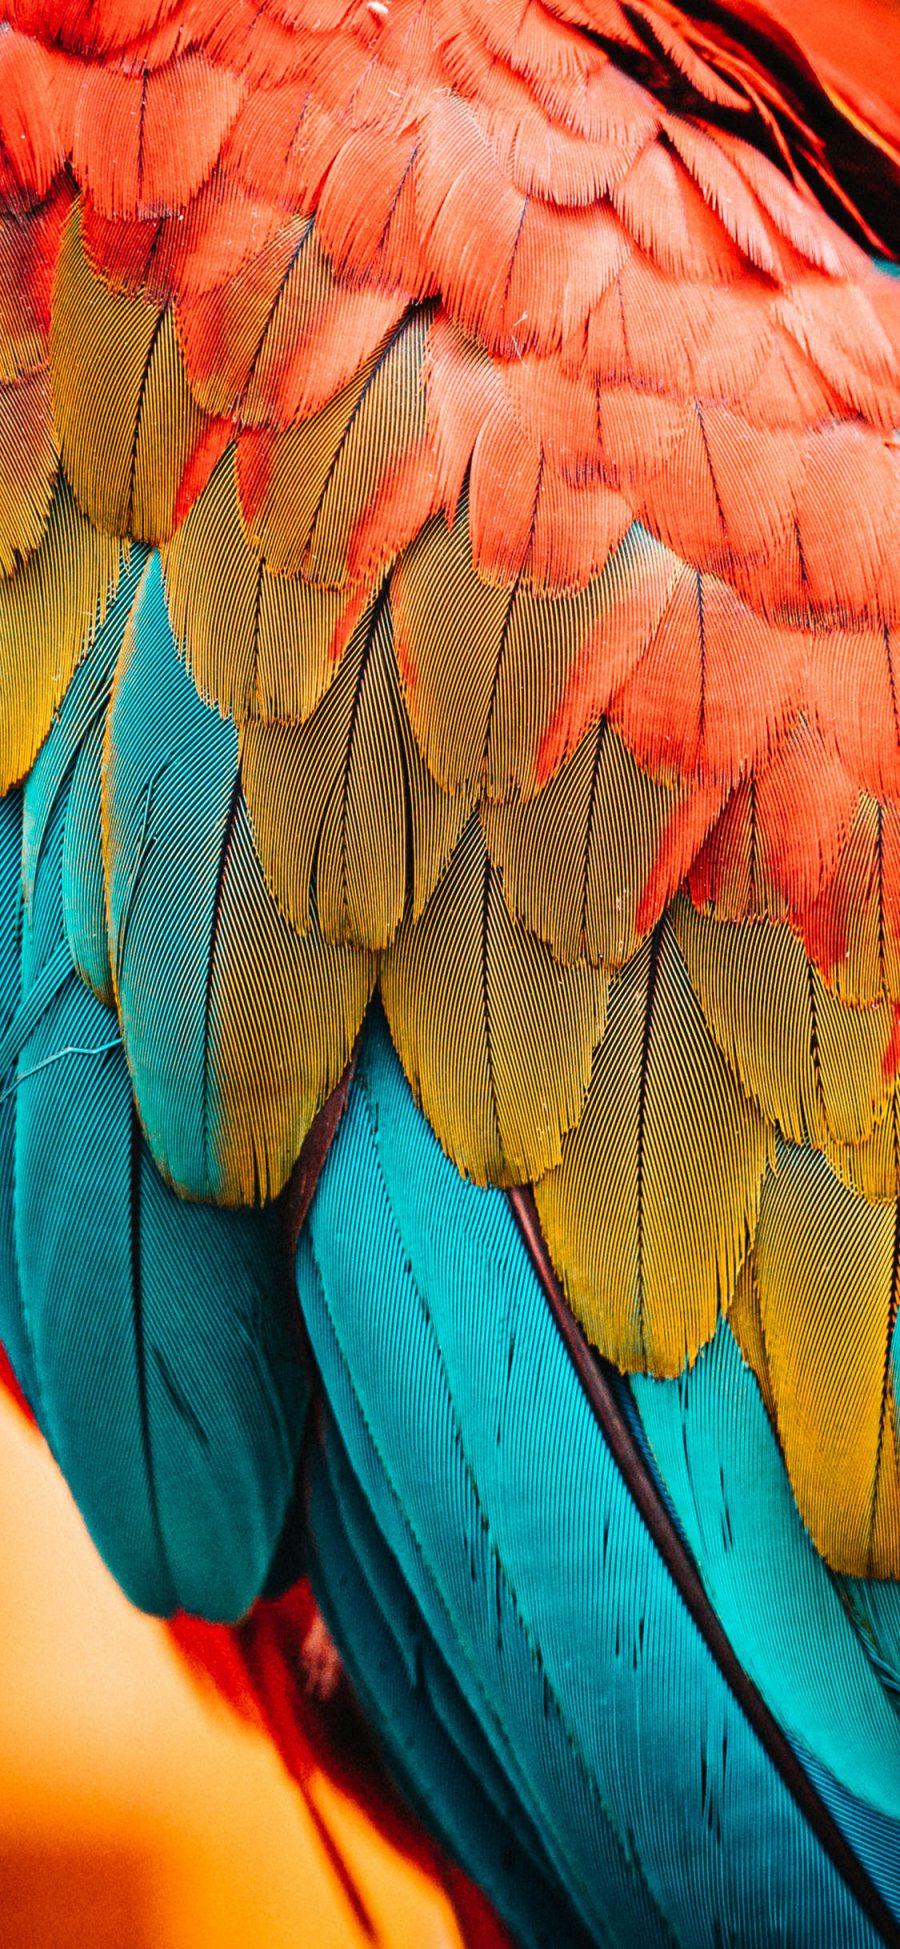 [2436×1125]羽毛 鹦鹉 五彩 鸟类 苹果手机壁纸图片